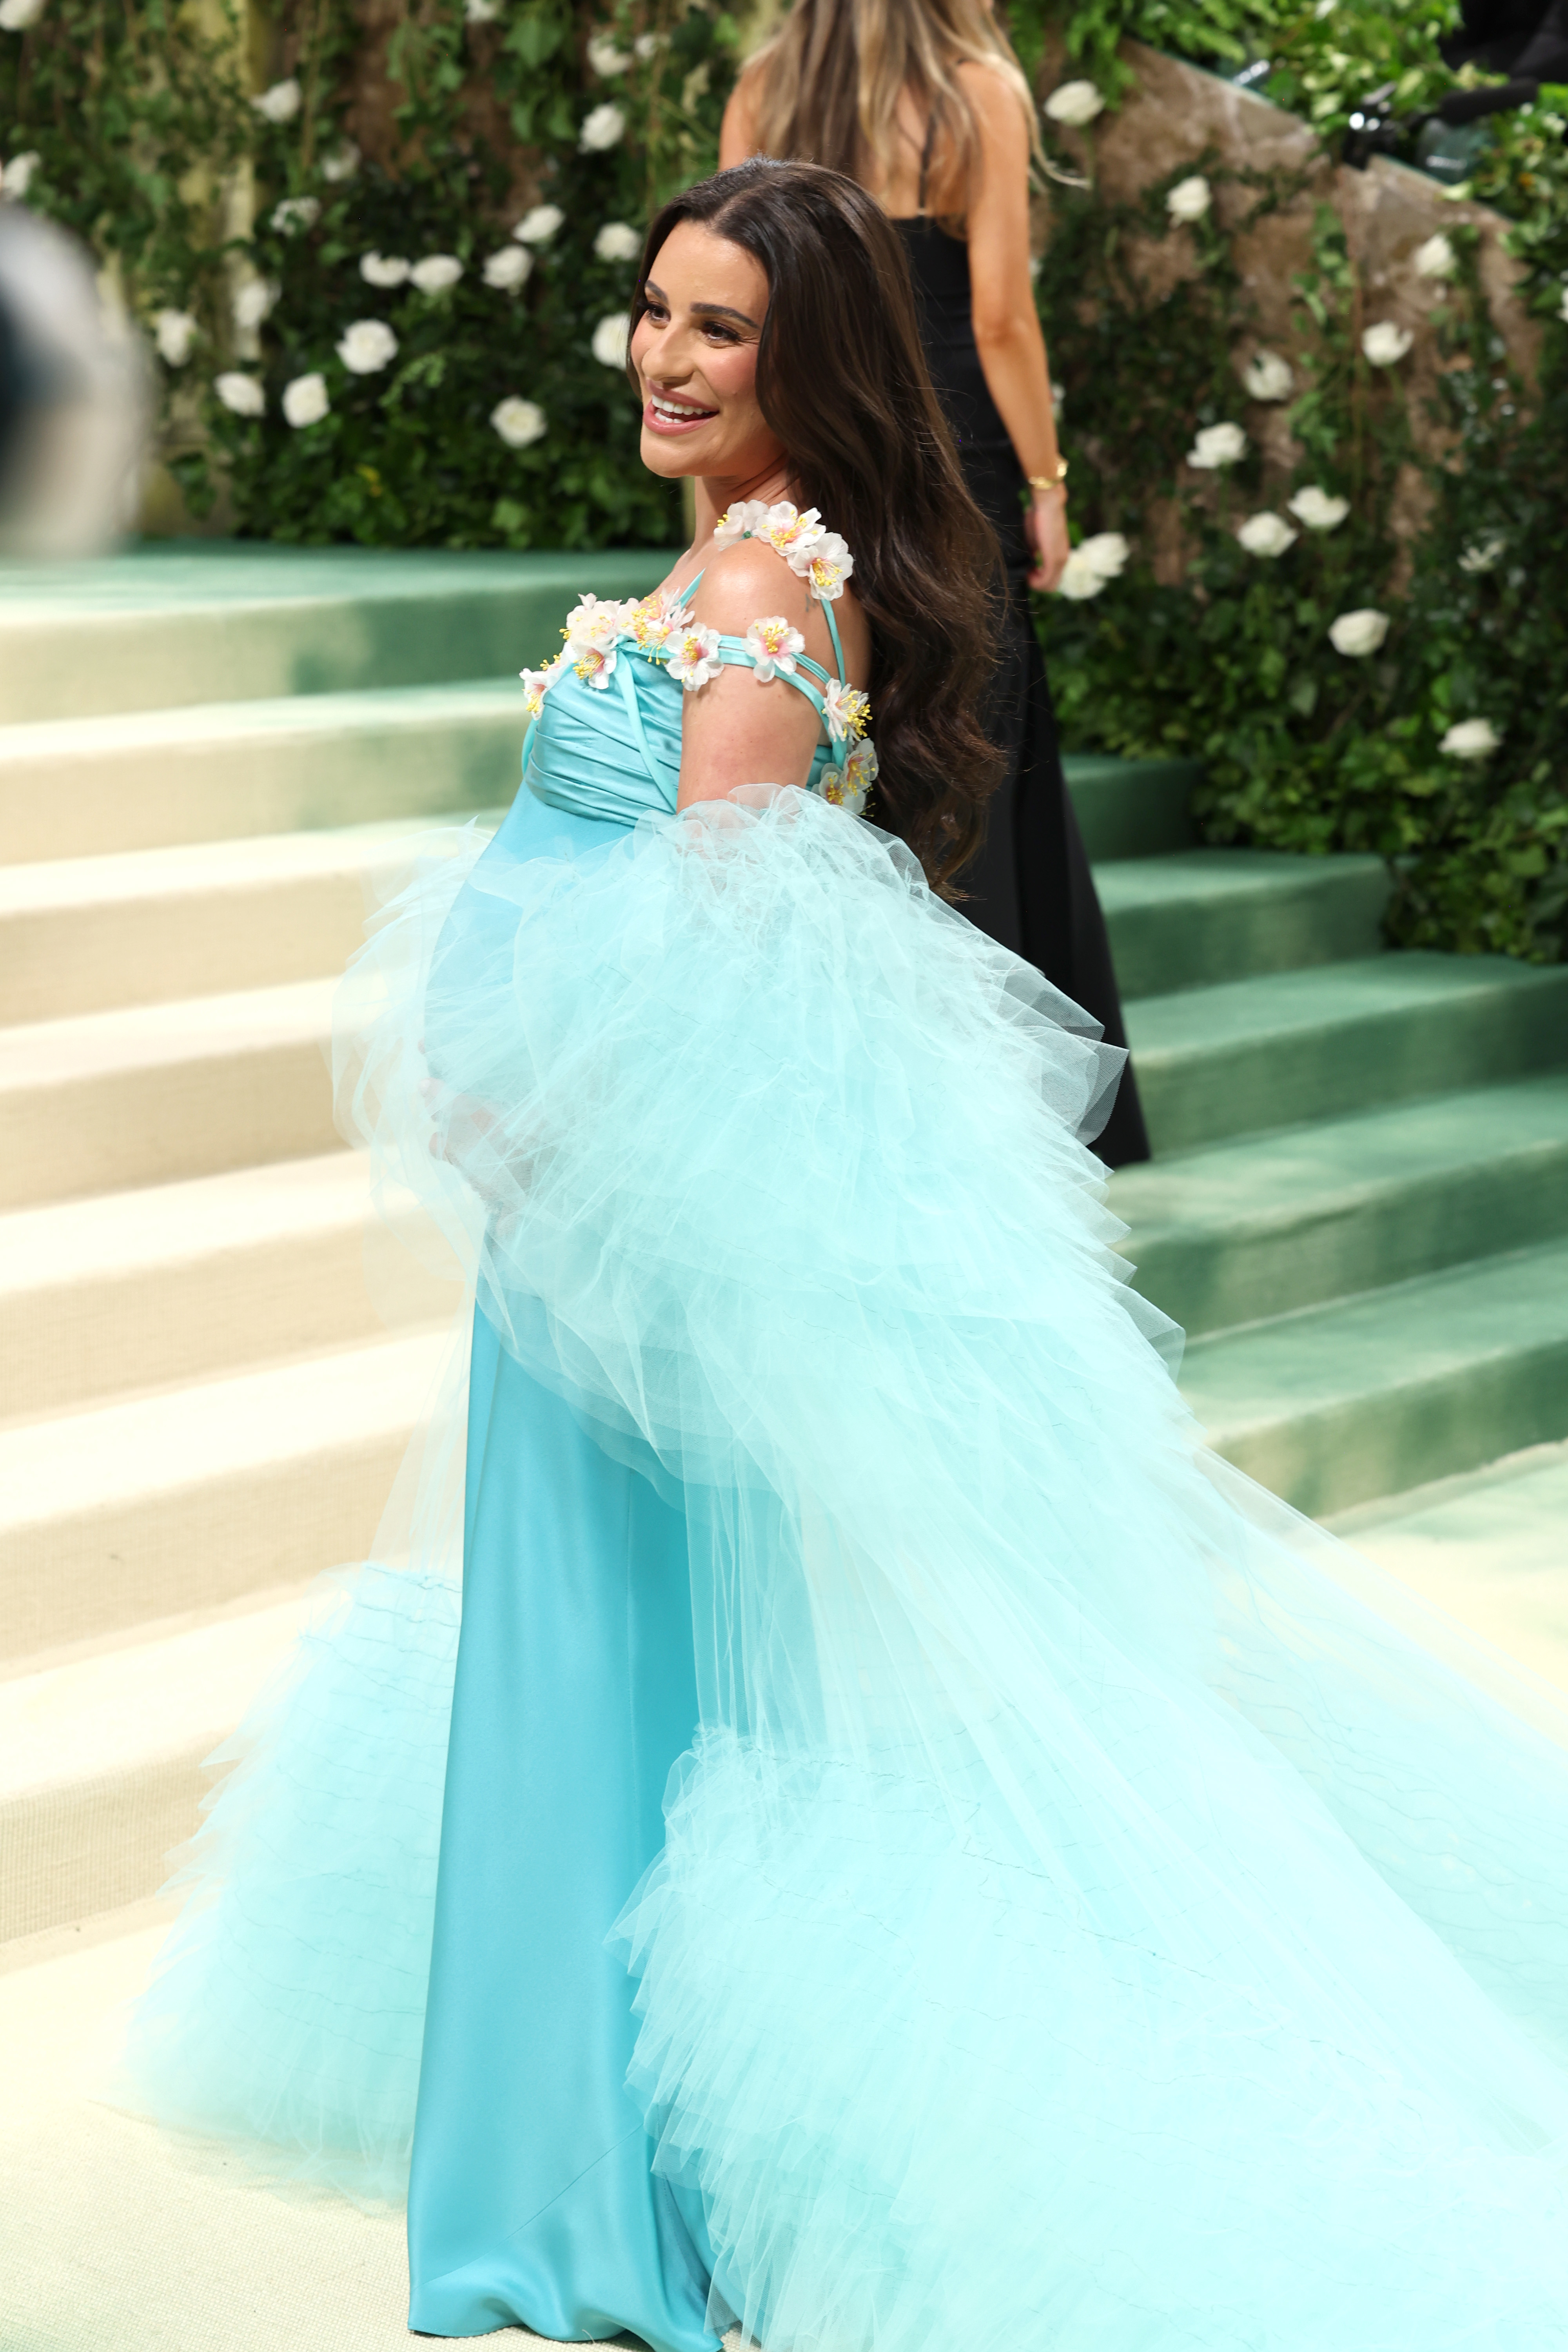 Lea Michele en un evento, sonriente, con un vestido largo con adornos florales y una capa de tul